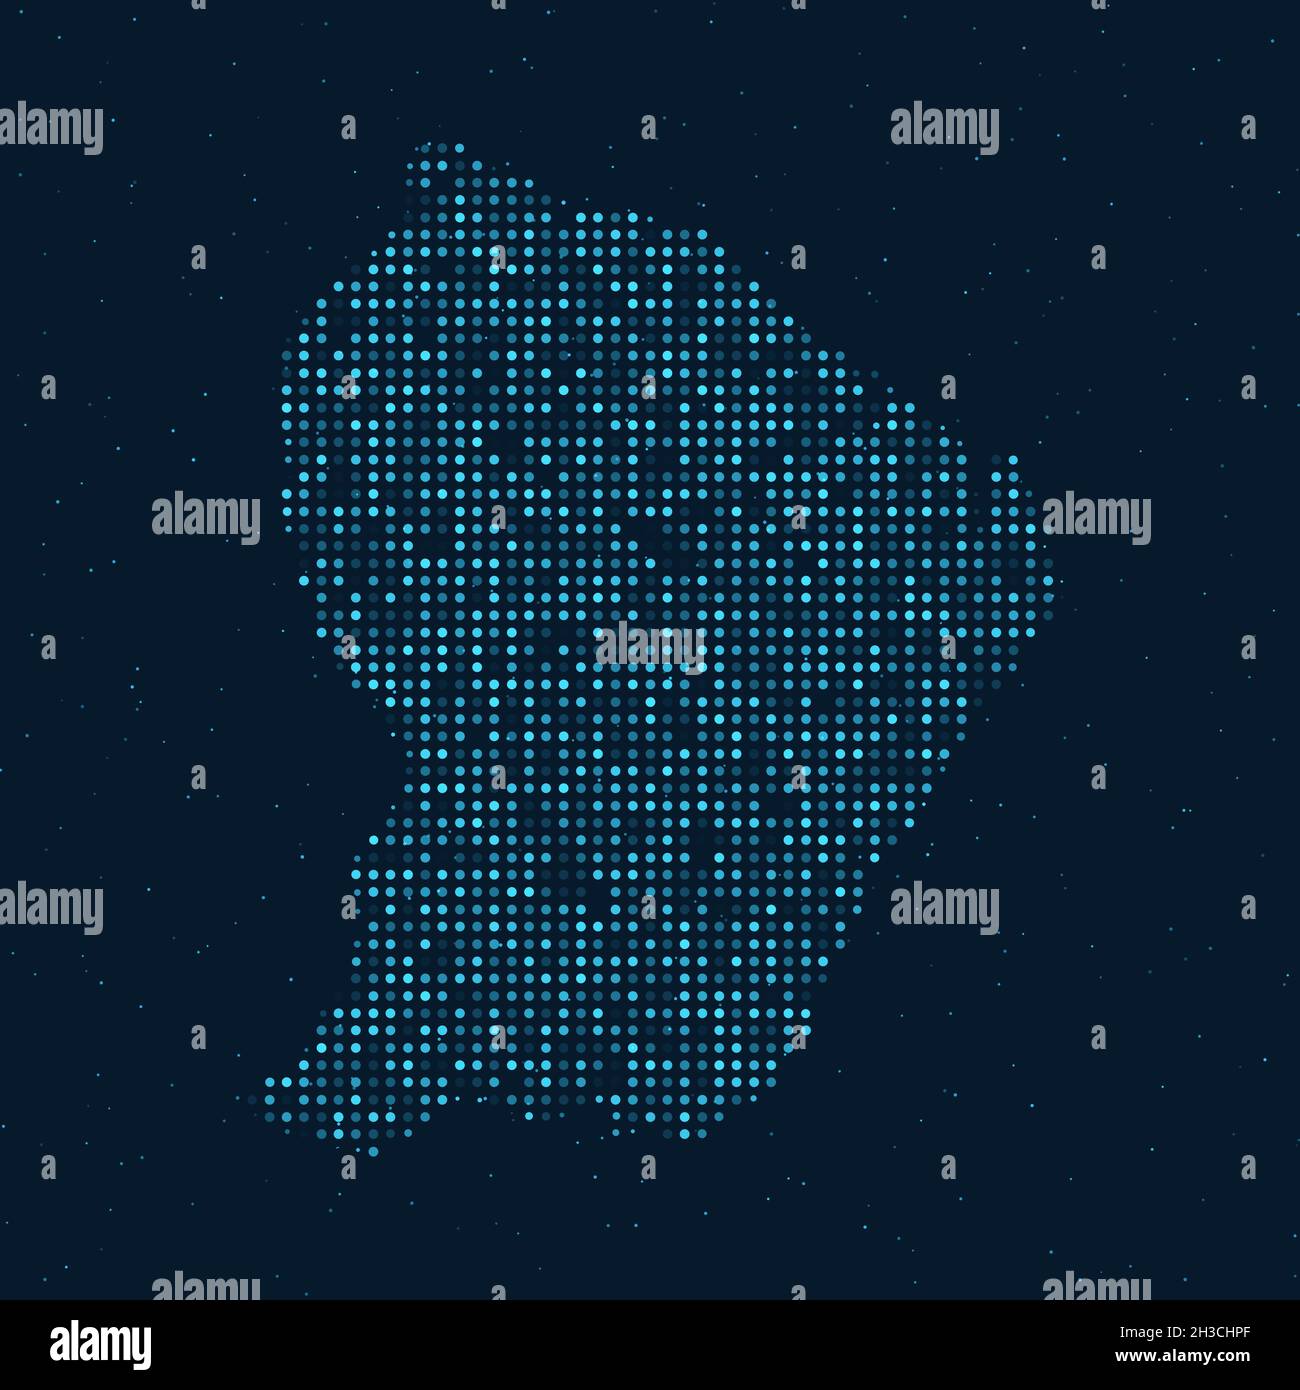 Abstrait pointillé demi-ton avec effet étoilé sur fond bleu foncé avec carte de Guyane française.La technologie numérique en pointillés conçoit la sphère et la structure. Illustration de Vecteur